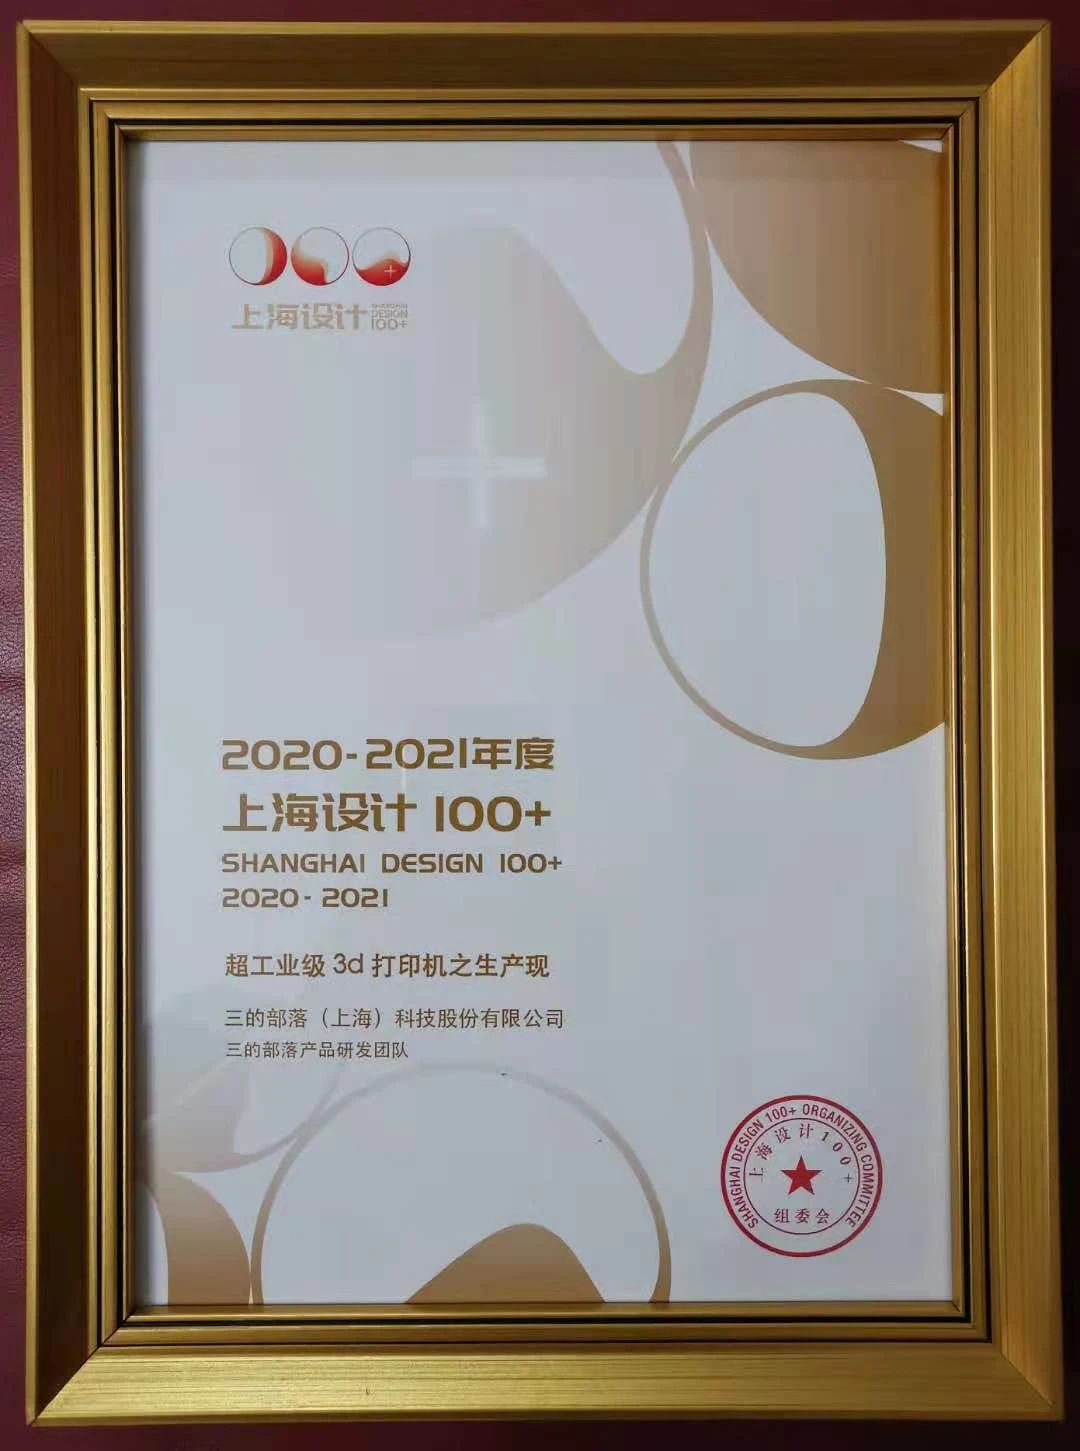 “上海设计100+”正式发布，三的部落“超工业级3D打印机之生产现”喜获大奖